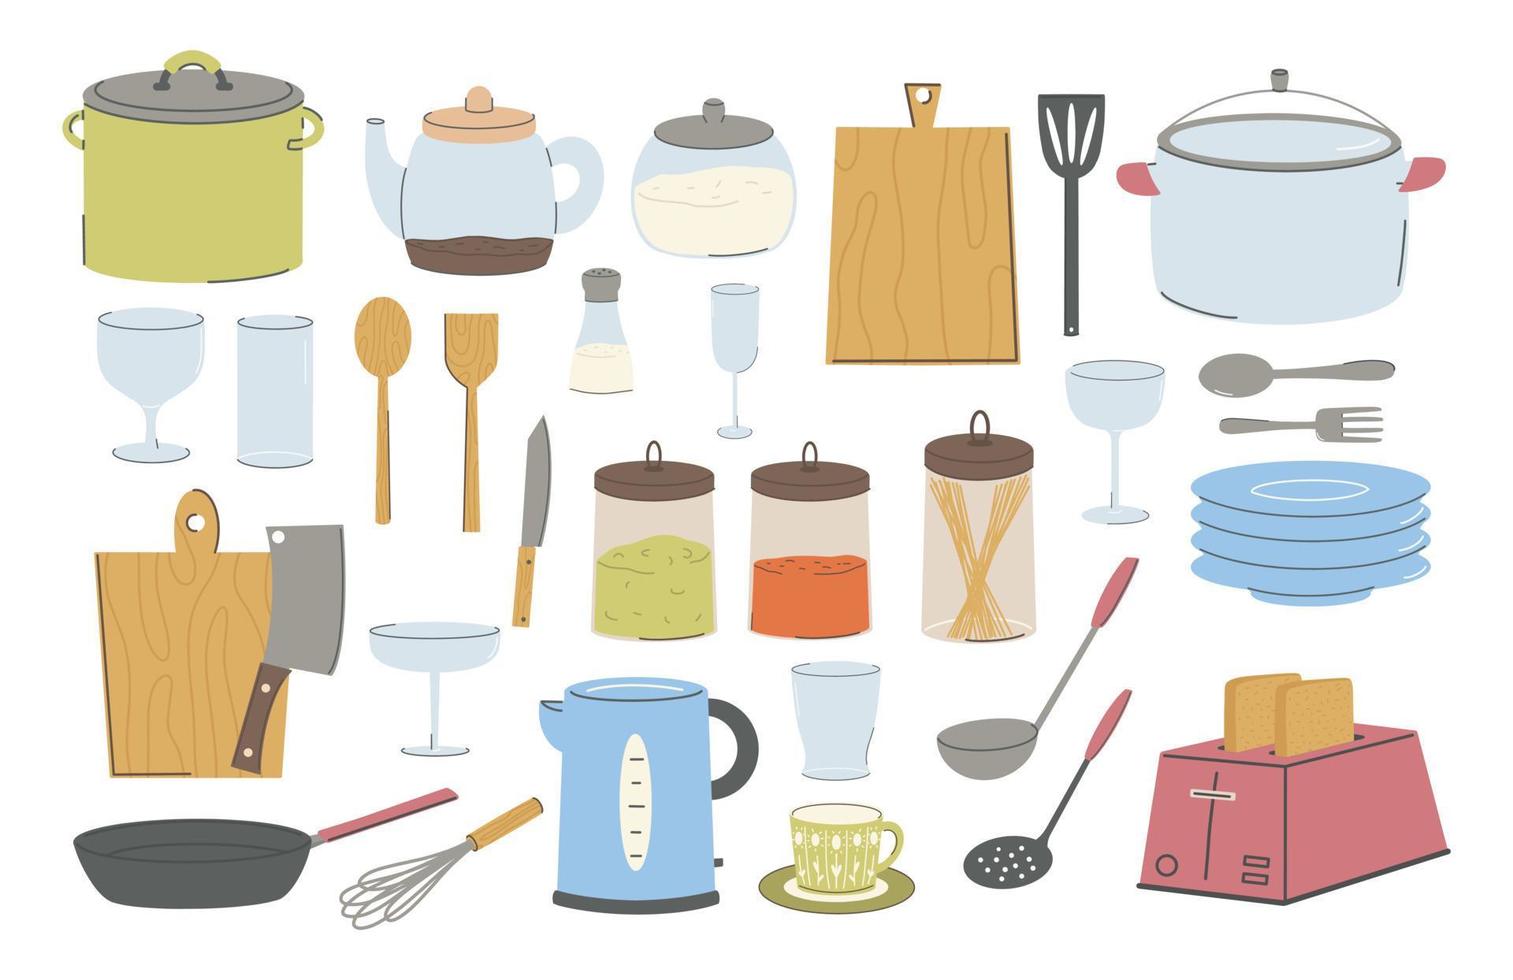 kooktoestellen en accessoires collectie. keukengerei, gereedschap, apparatuur en bestek om te koken. platte vectorillustraties van kookgerei objecten geïsoleerd op een witte achtergrond. vector